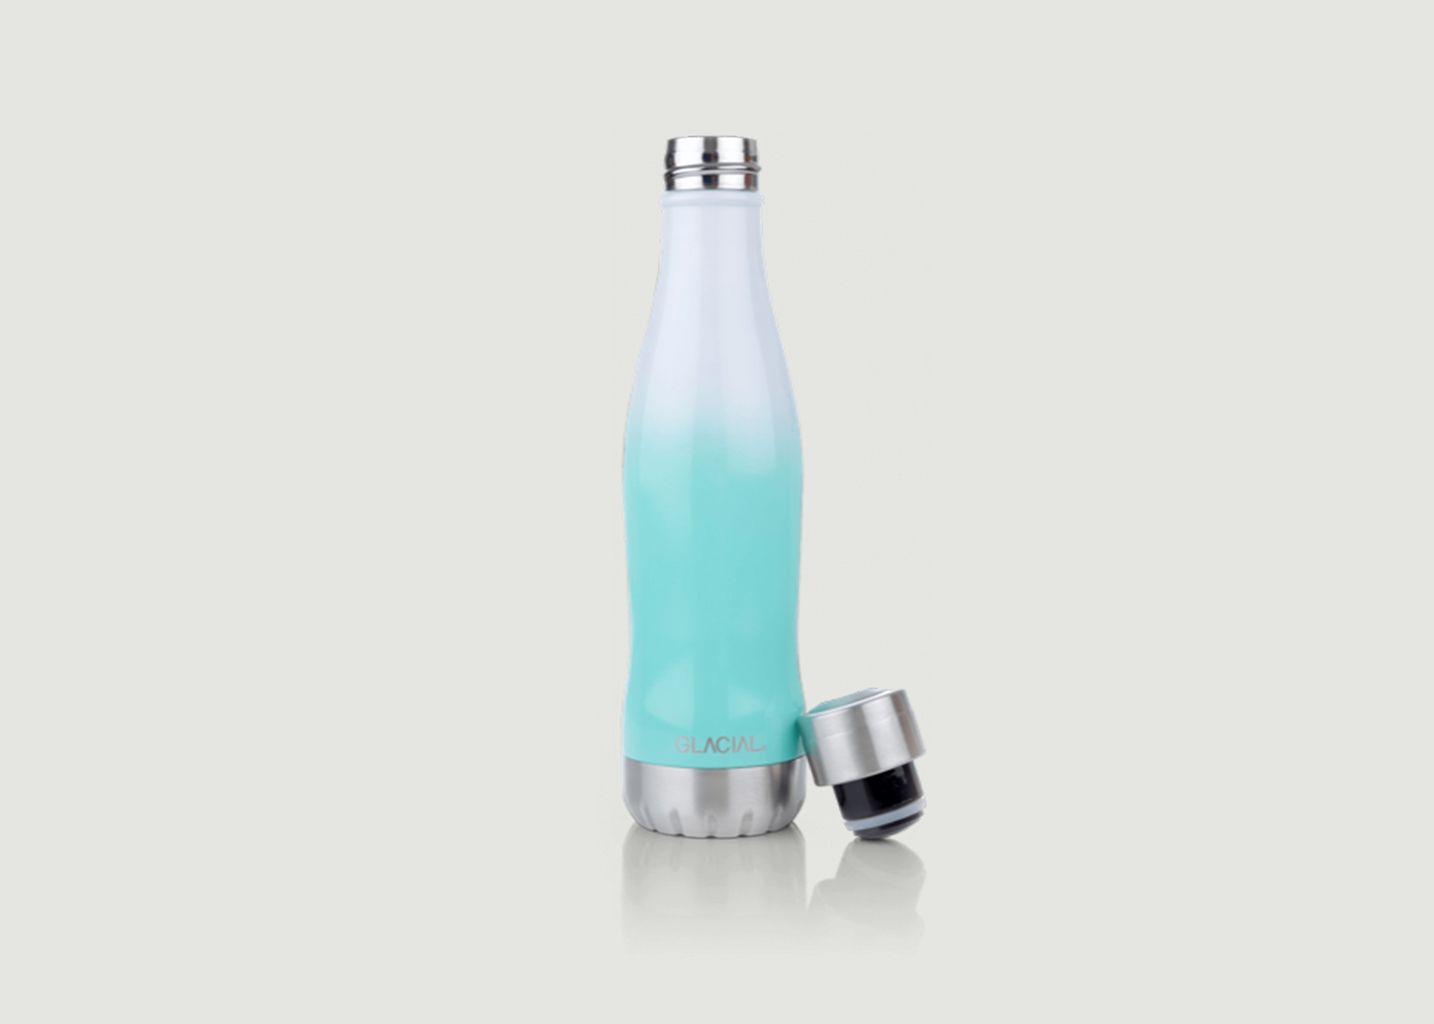 Bubble Mint Flasche aus Edelstahl - Glacial